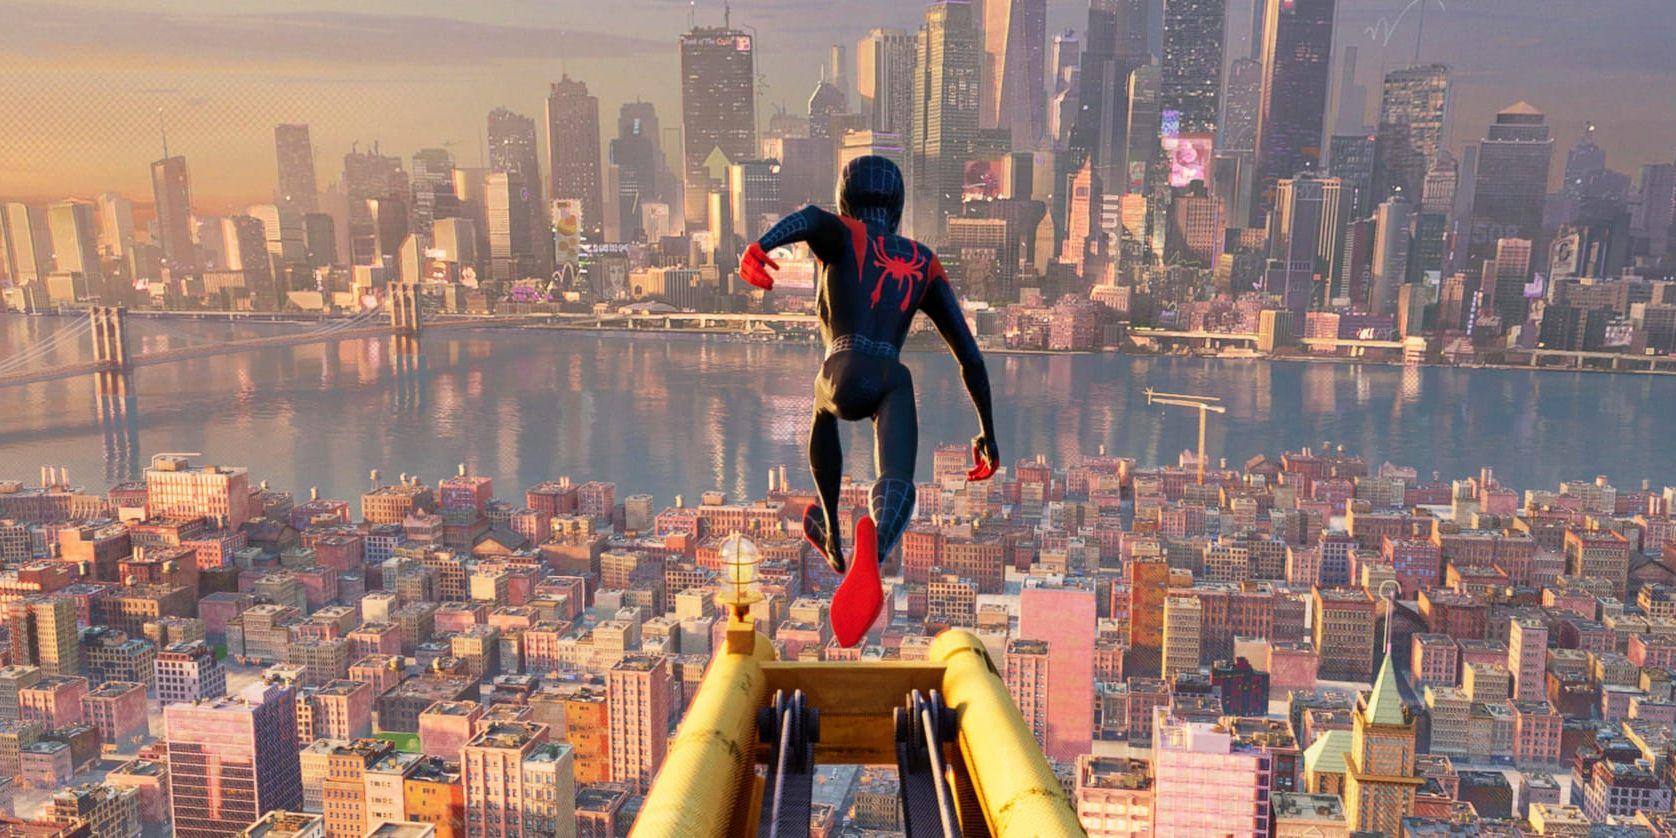 I Miles Morales New York finns det bara en Spider-Man. Eller? I "Spider-Man: Into the spiderverse" är ingenting riktigt säkert. Pressbild.